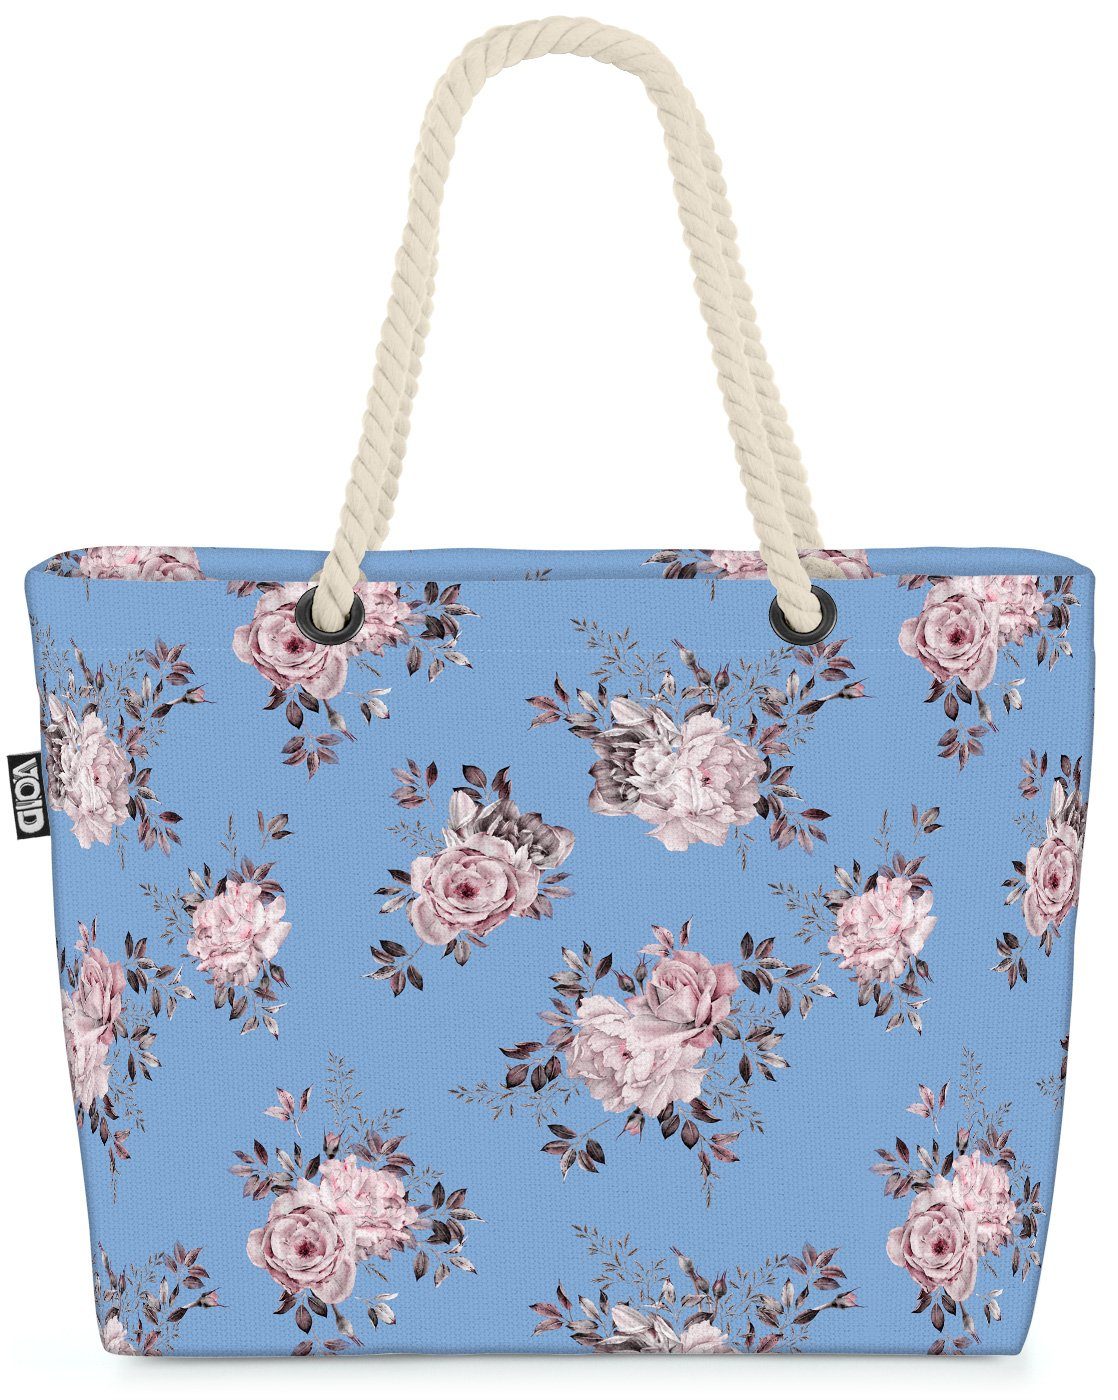 VOID Hellblau Rose Beach bäuerlich Blumen-Muster Strandtasche Bag (1-tlg), Weisse Pfingsrosen romantisch